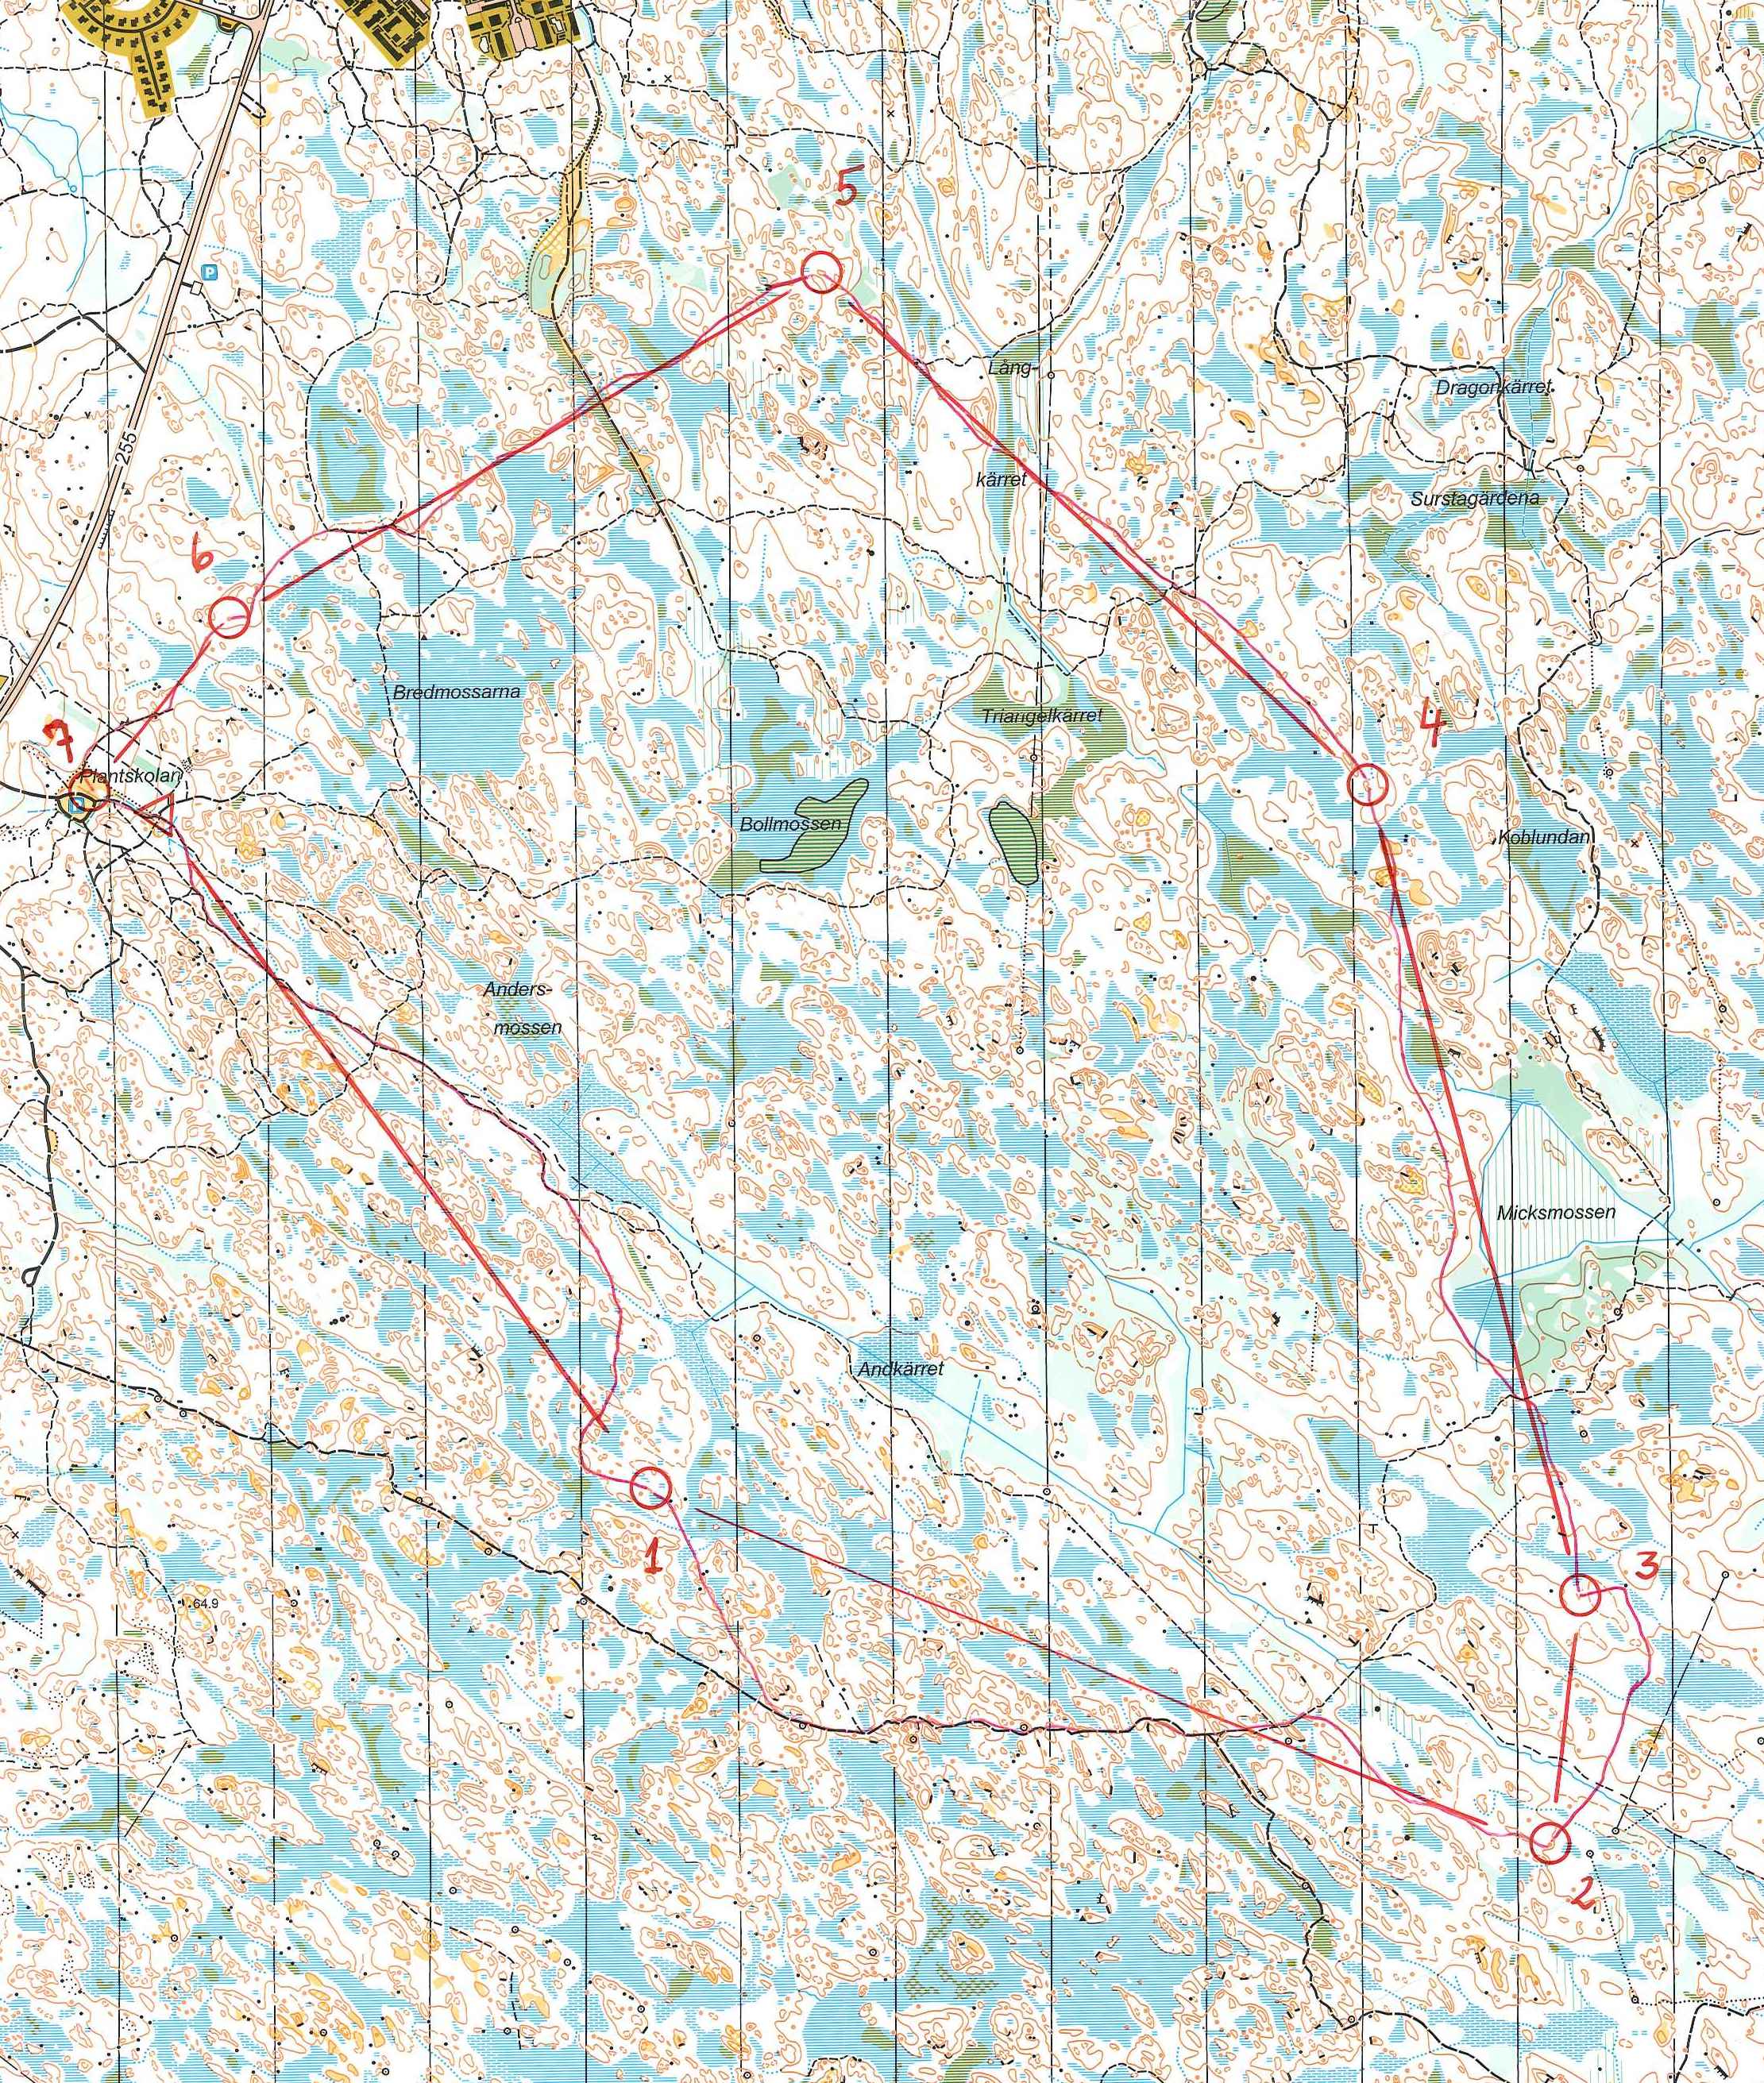 Lång-KM (Ultralång), varv 1 (19.10.2003)